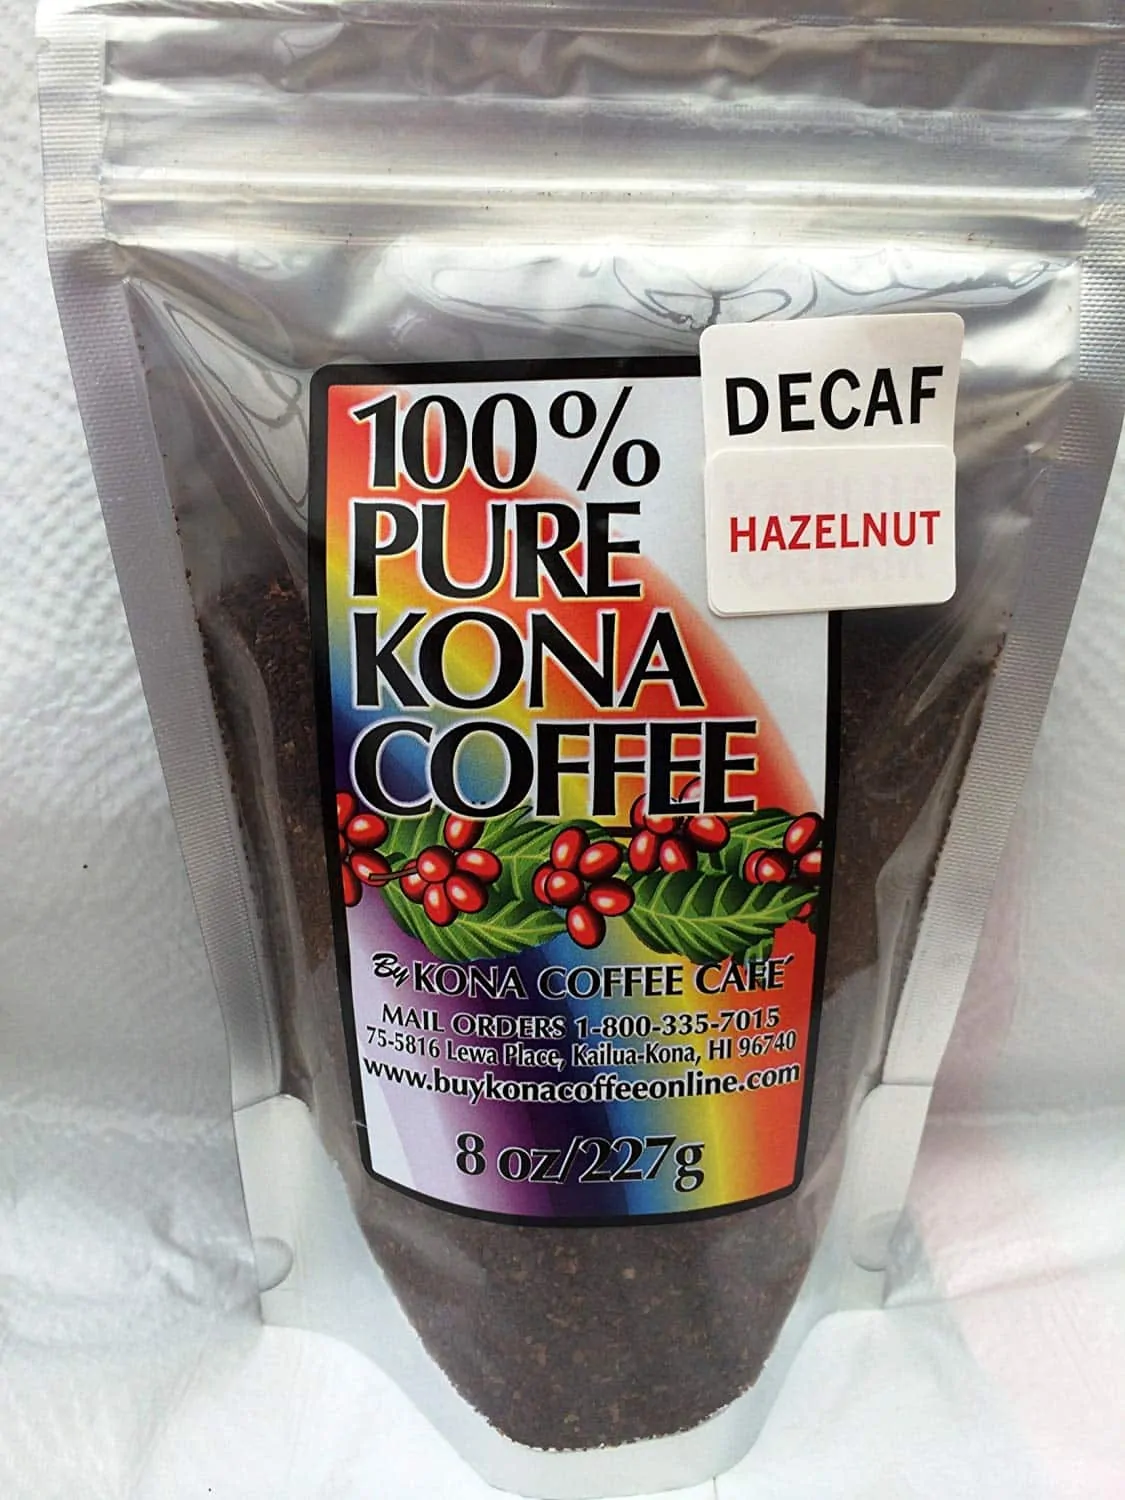 Decaf Kona Coffee, Hazelnut Flavored